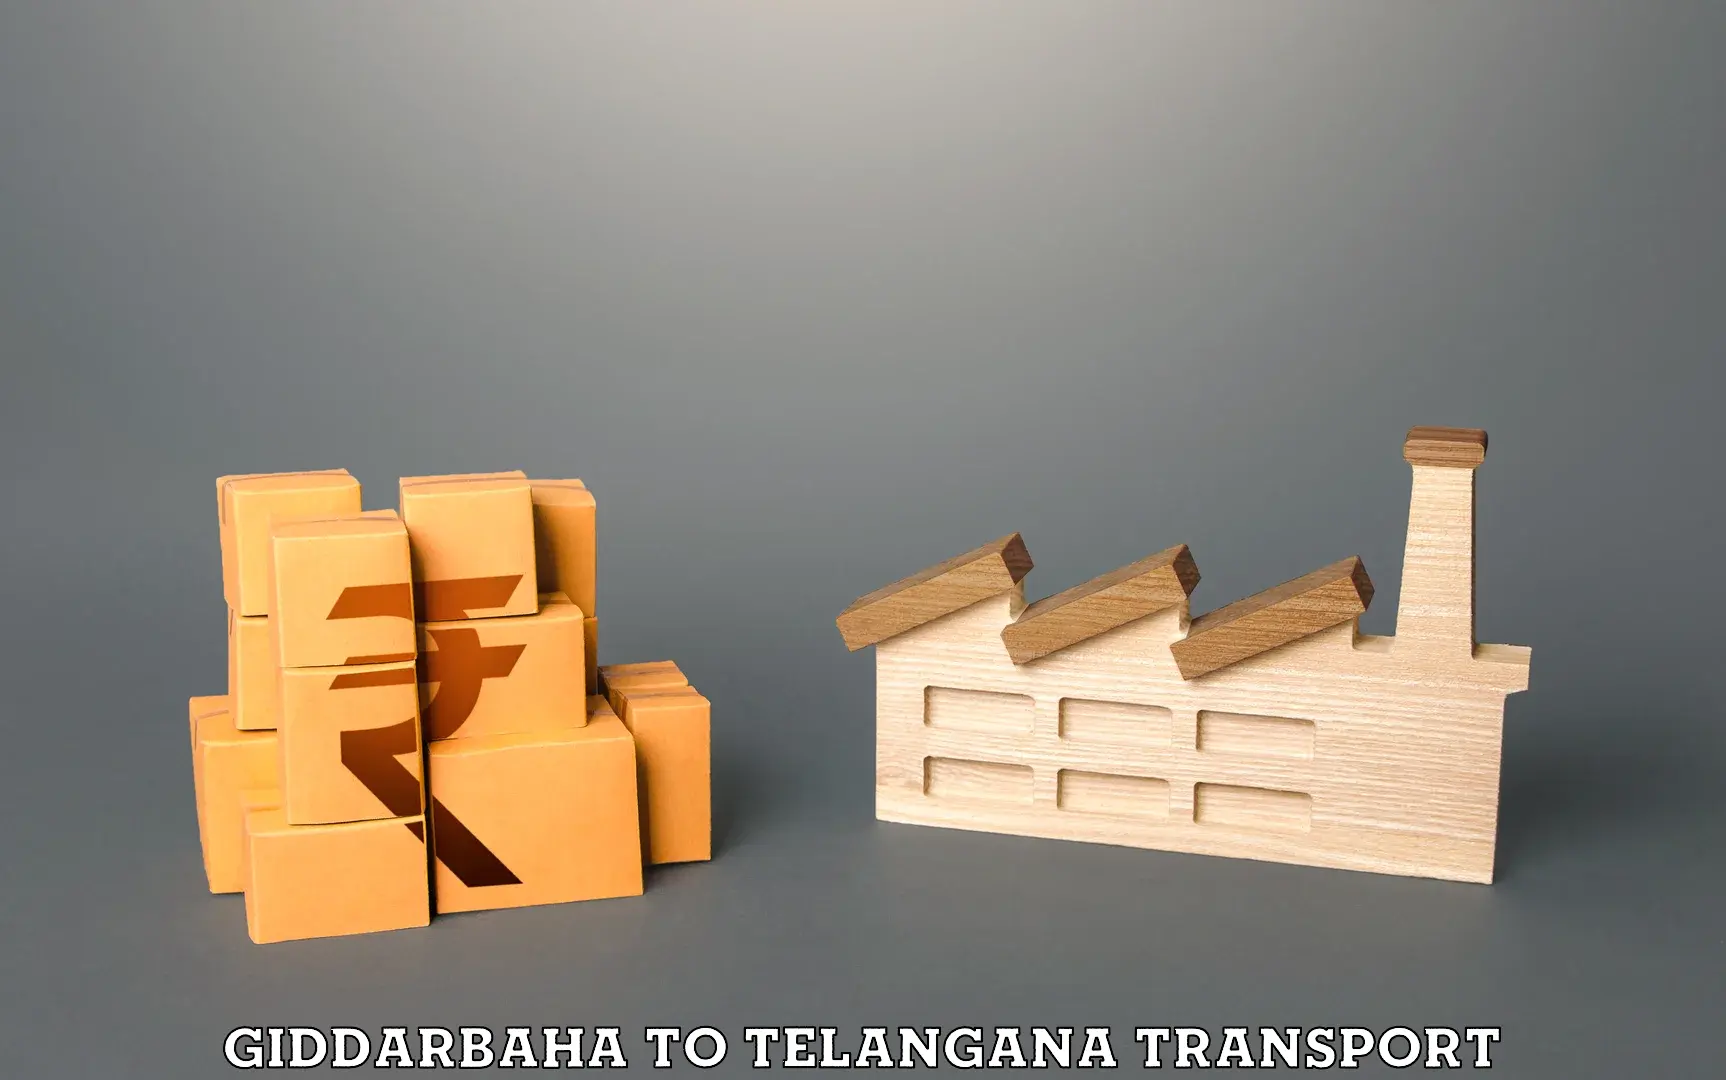 Transport in sharing Giddarbaha to Balanagar